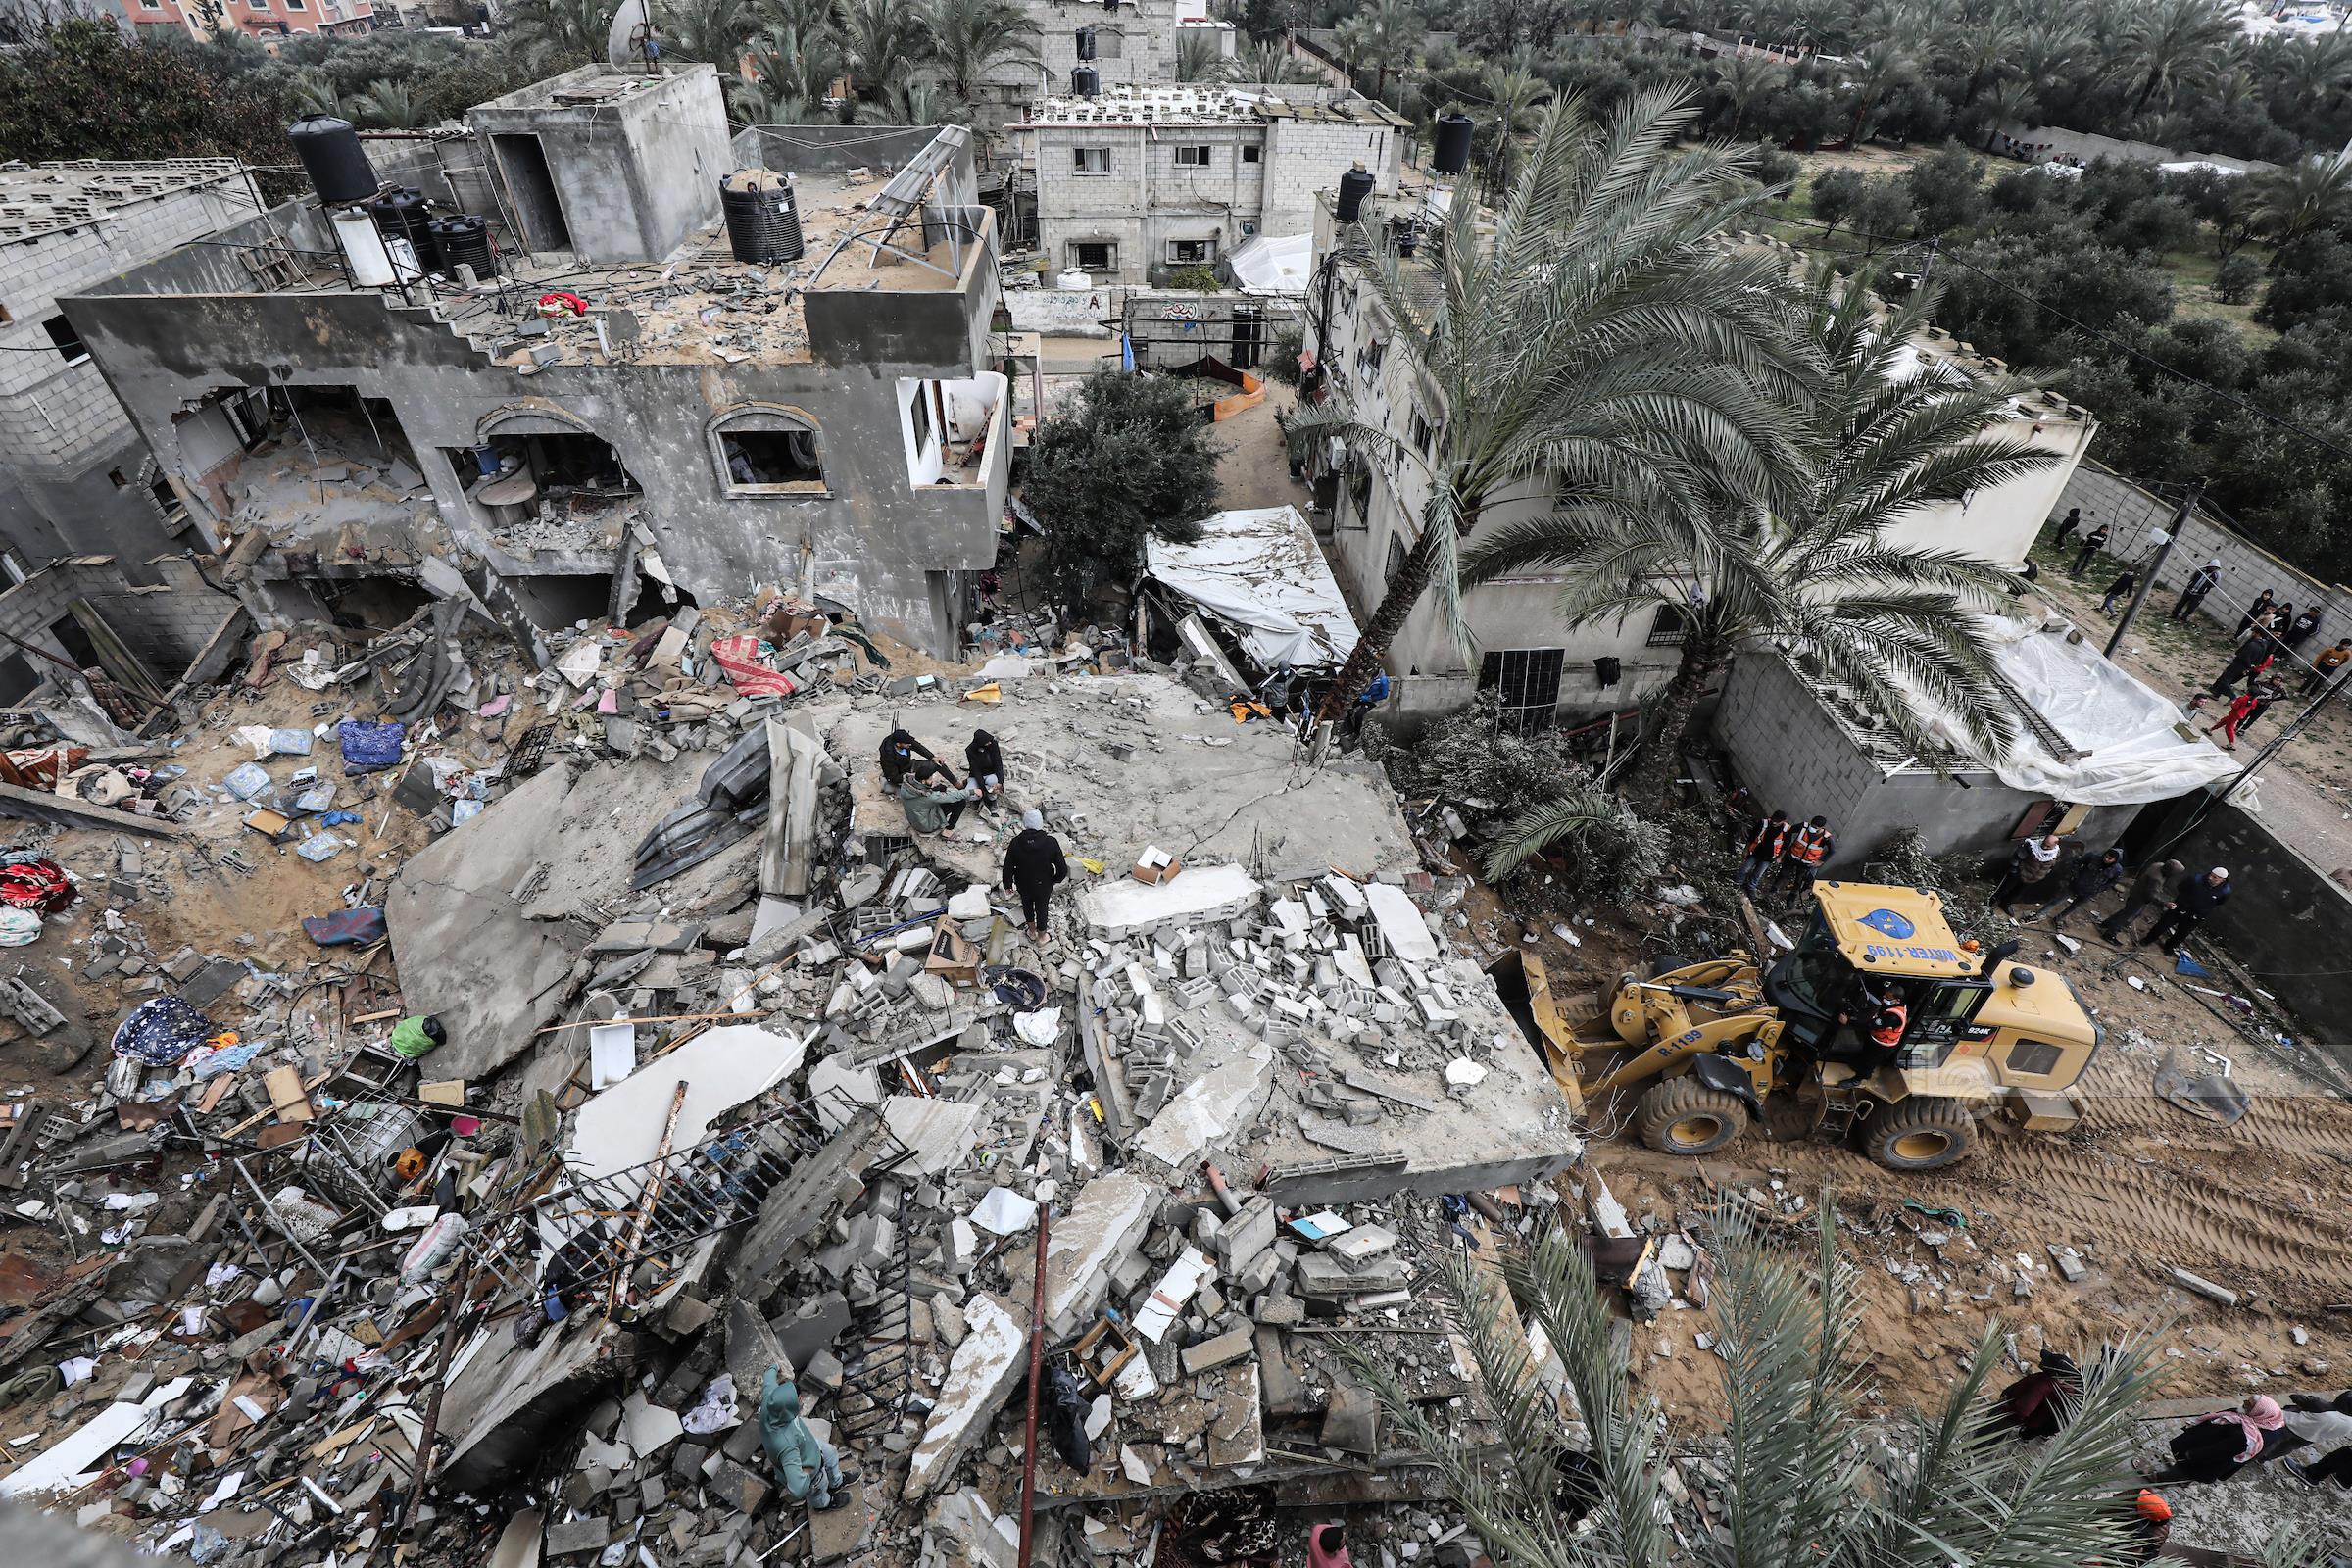 مصدر رفيع المستوى: توافق مصري أمريكي قطري على ضرورة إيجاد صيغة للوصول لهدنة إنسانية بقطاع غزة بشكل فوري